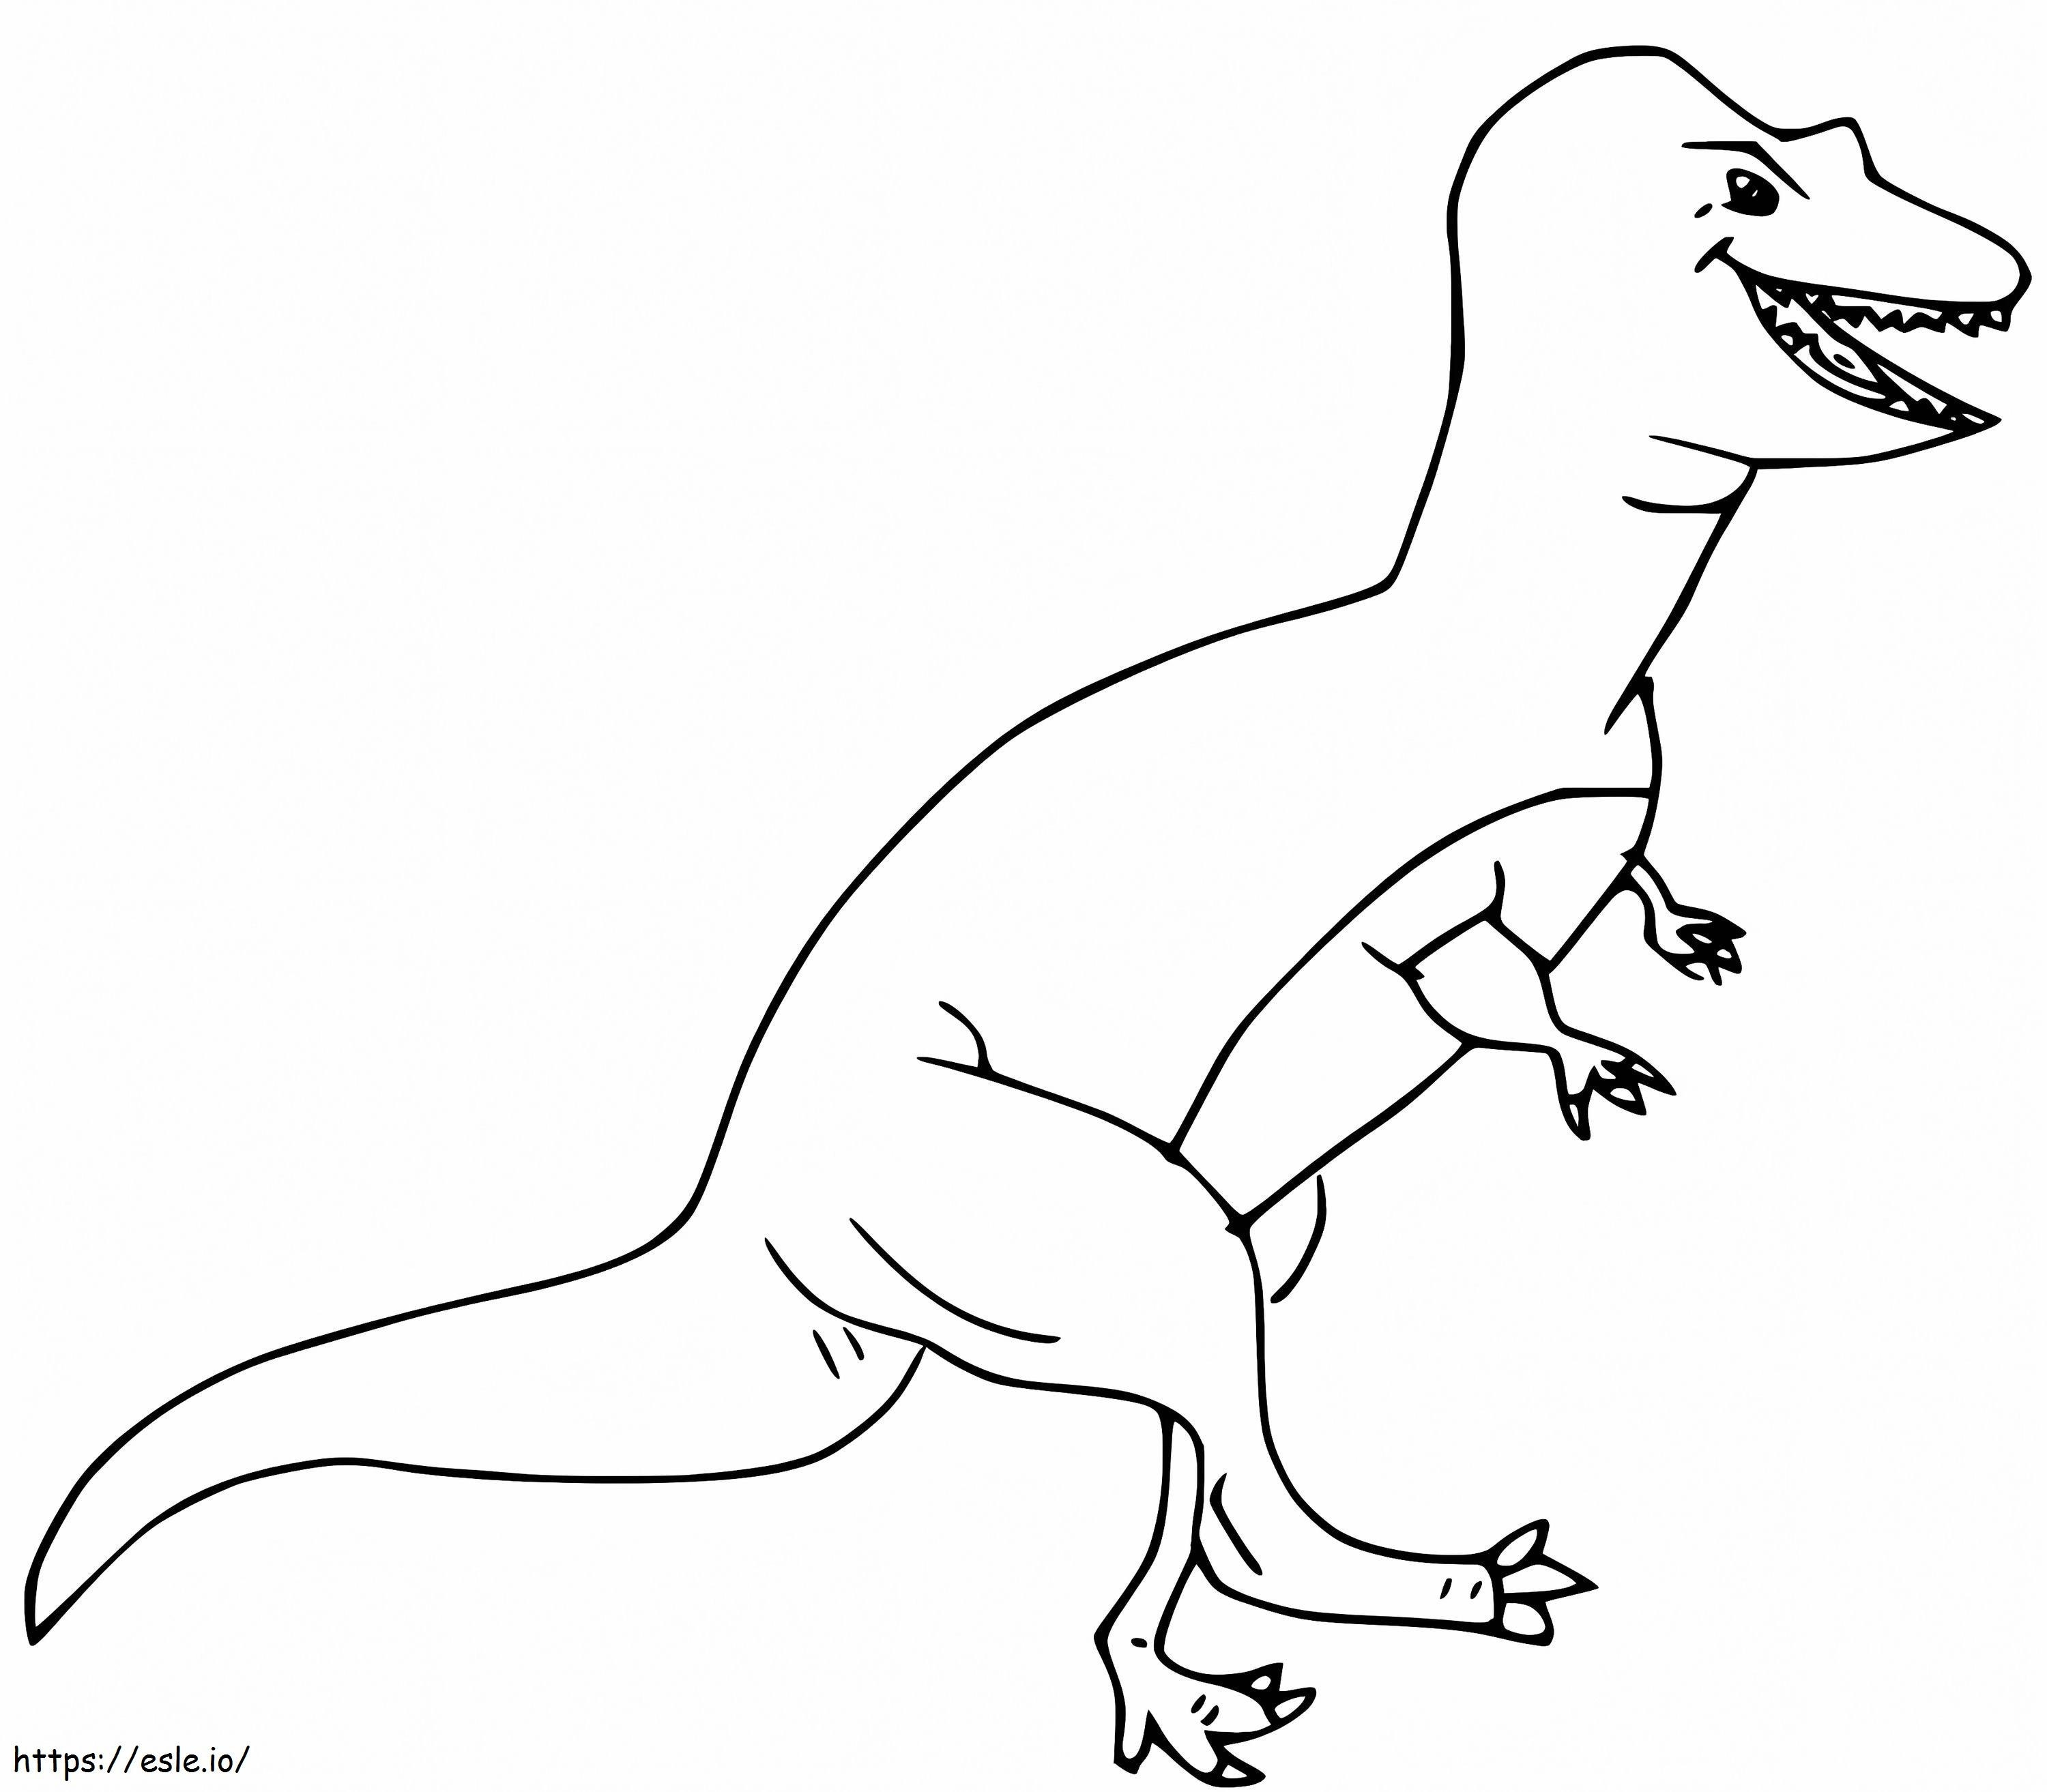 Lustiger Allosaurus ausmalbilder